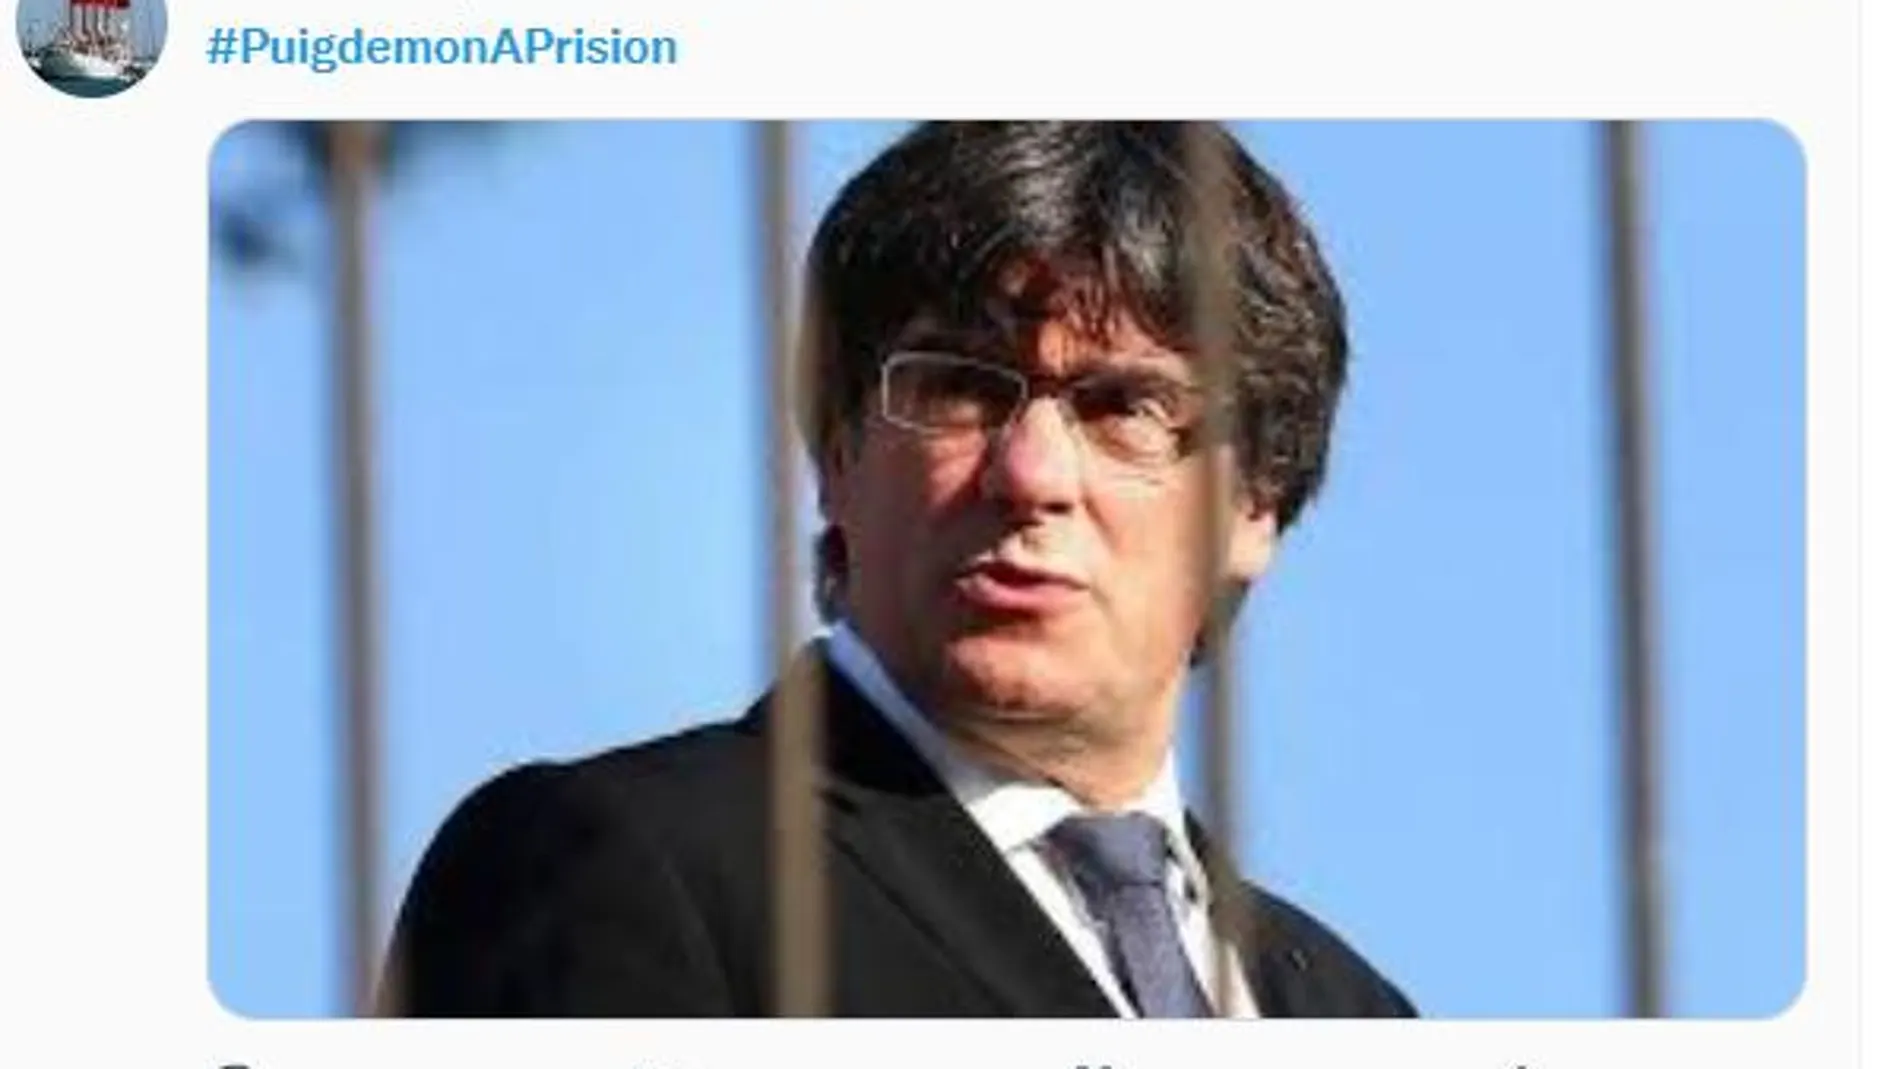 Uno de los tuits celebrando la detención de Puigdemont